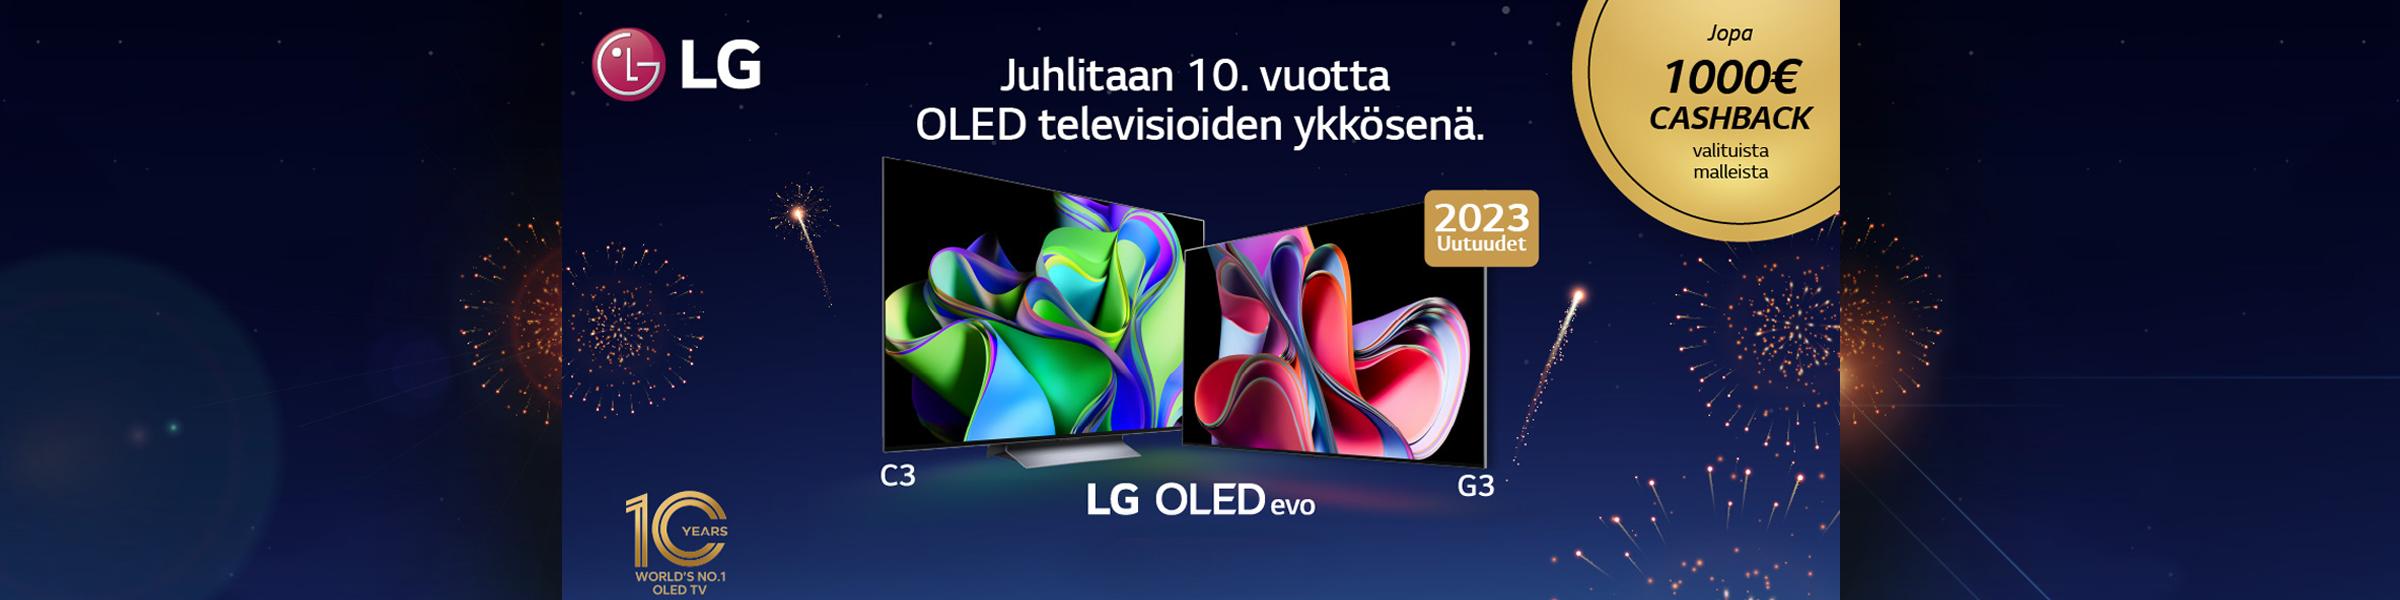 Osta nyt valikoitu LG OLED -televisio, kirjoita arvio niin saat jopa 1000 euroa hyvitystä